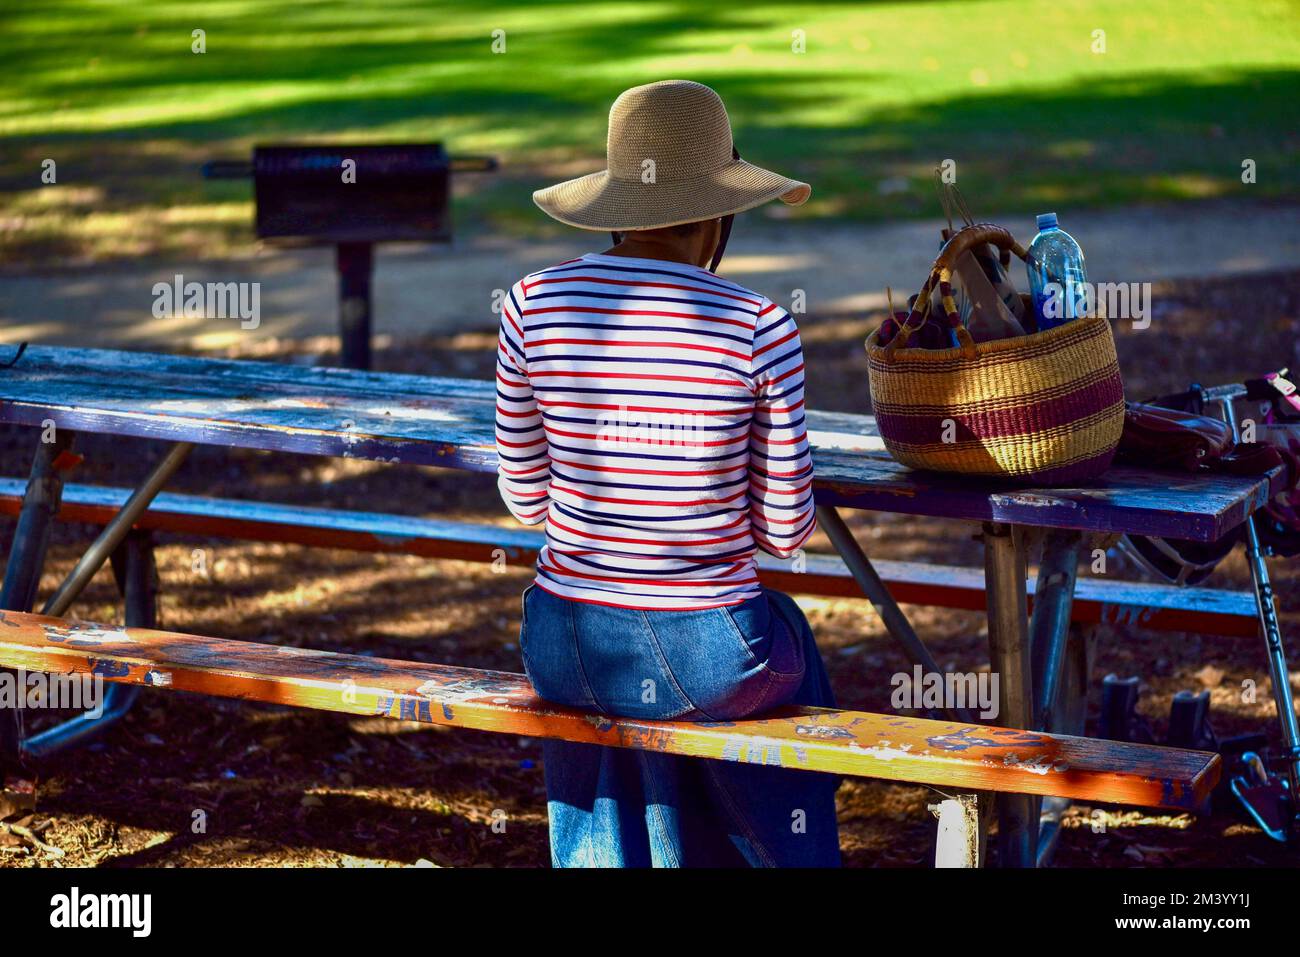 la mujer sentada en un banco del parque que lleva un sombrero floppy de fibra natural tiene un almuerzo tranquilo y silencioso en un entorno similar al parque Foto de stock